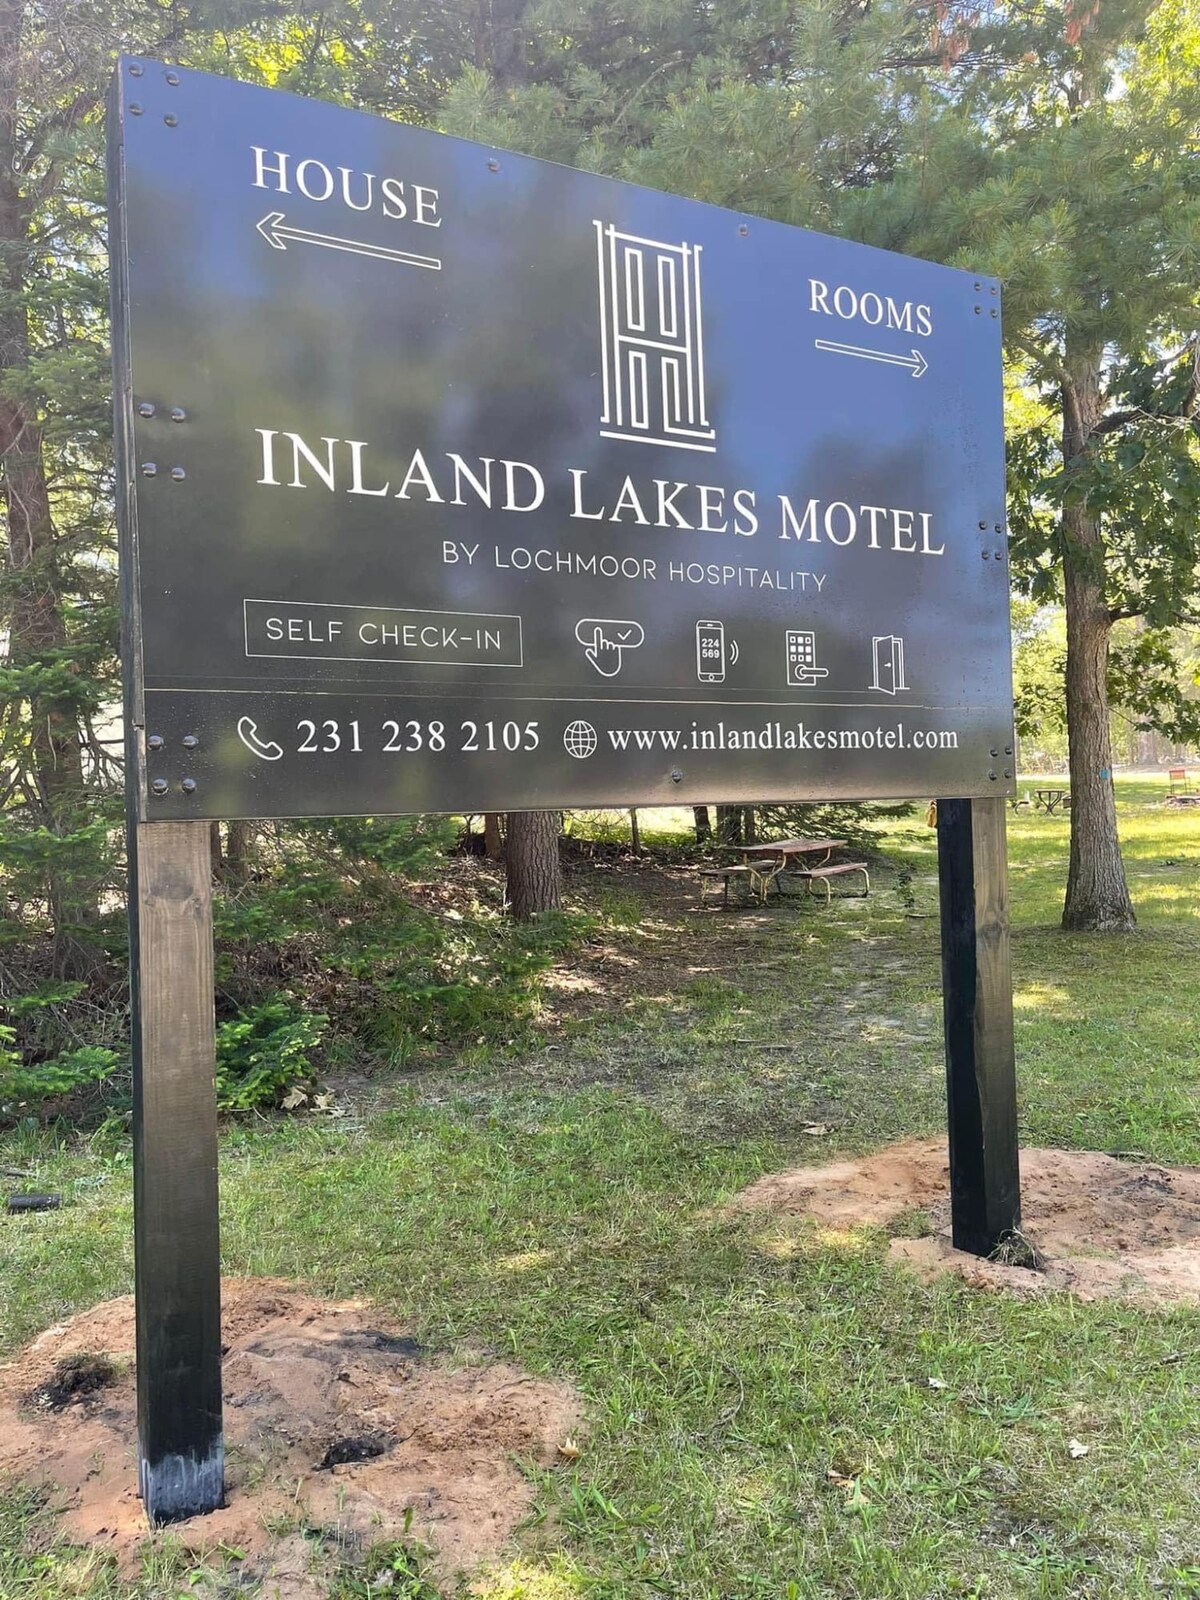 House at Inland Lakes Motel